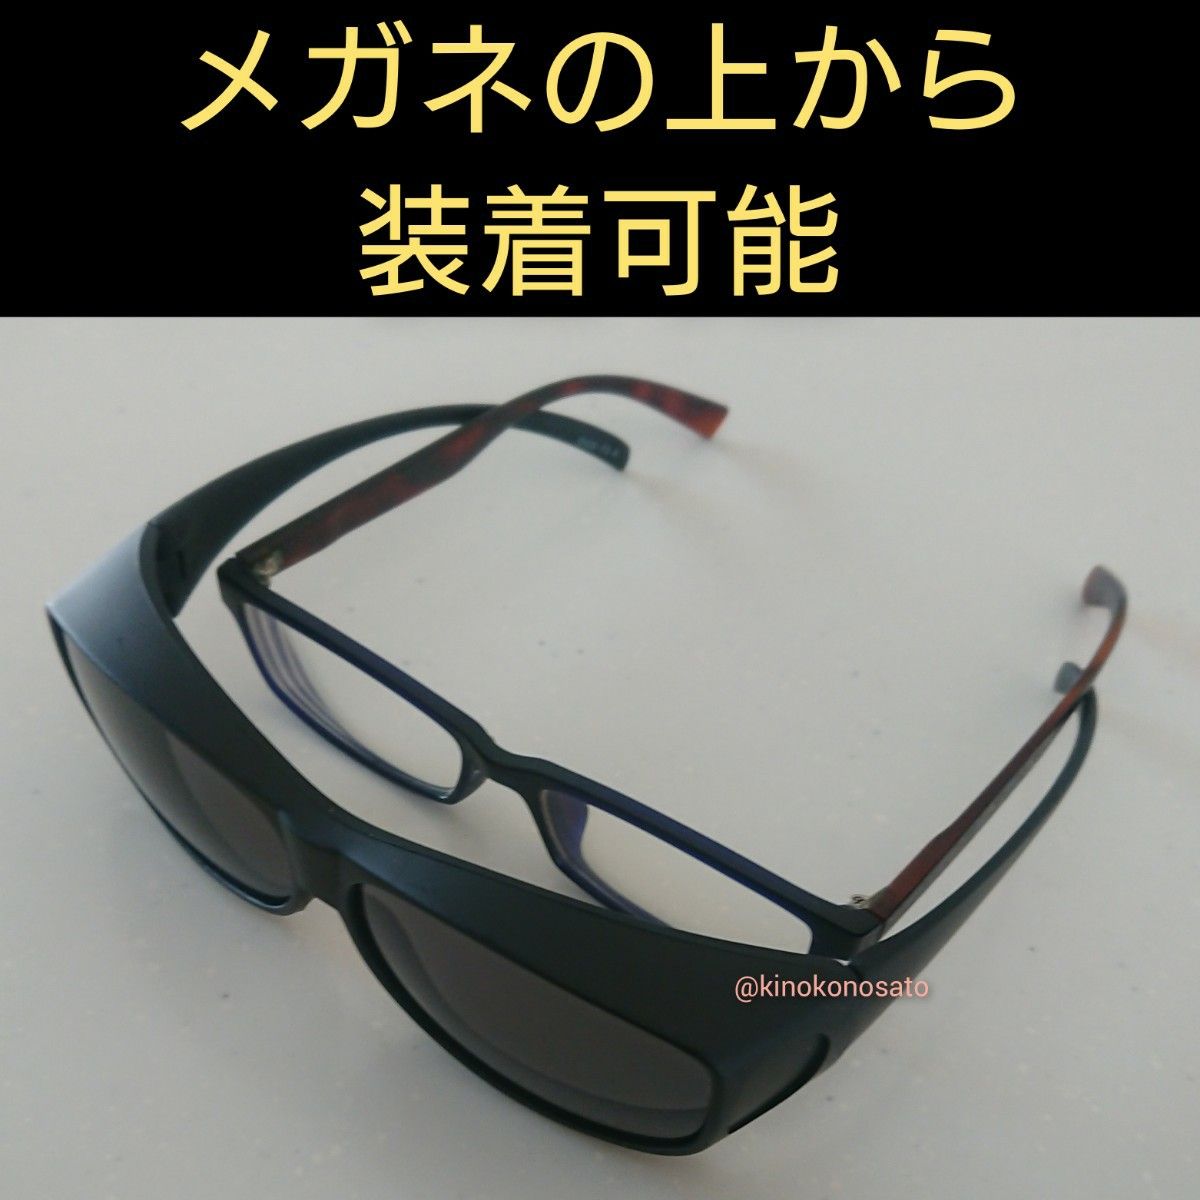 オーバーサングラス メガネの上から 掛けられる サングラス  マットブラック色